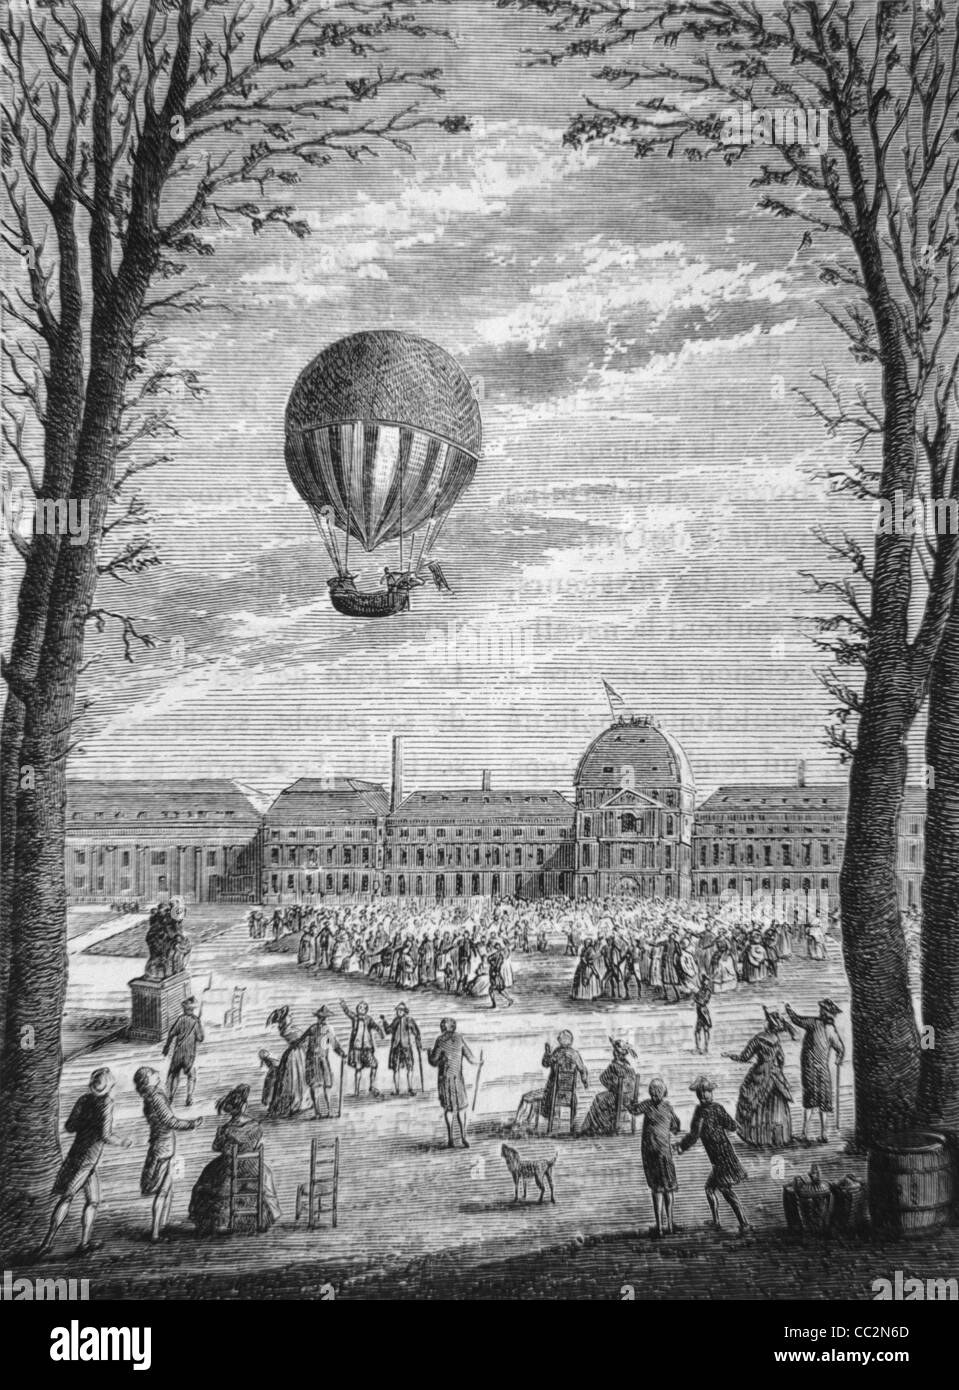 Premier voyage en ballon Montgolfier à l'hydrogène au-dessus de Paris en novembre 1783. c19th gravure ou illustration Banque D'Images